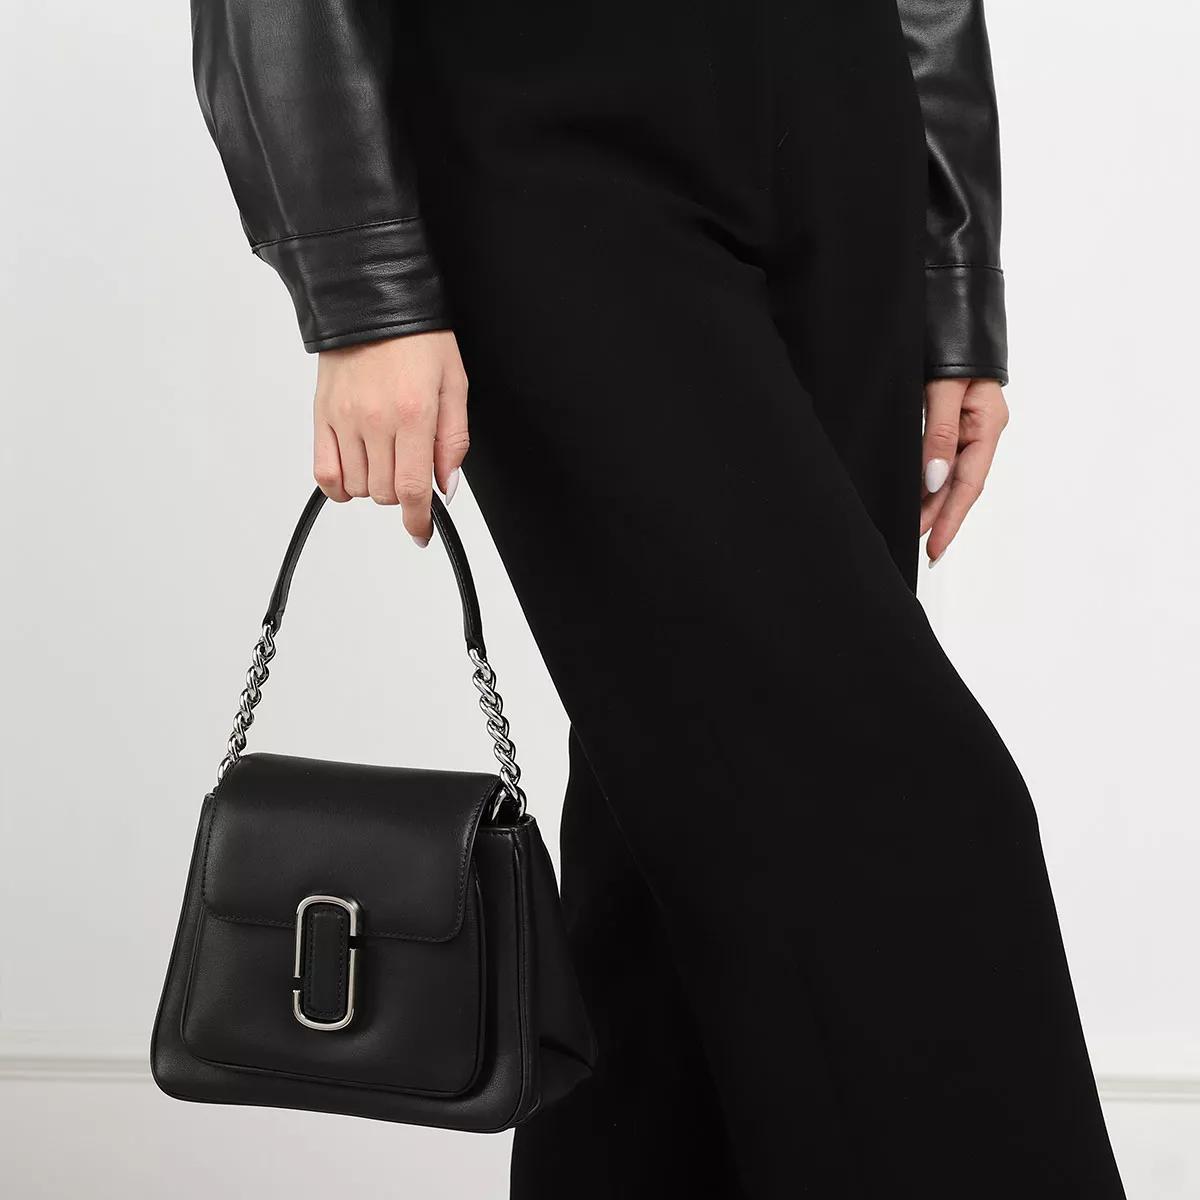 marc jacobs satchel bag - the chain mini satchel - gr. unisize - in - fÃ¼r damen schwarz donna